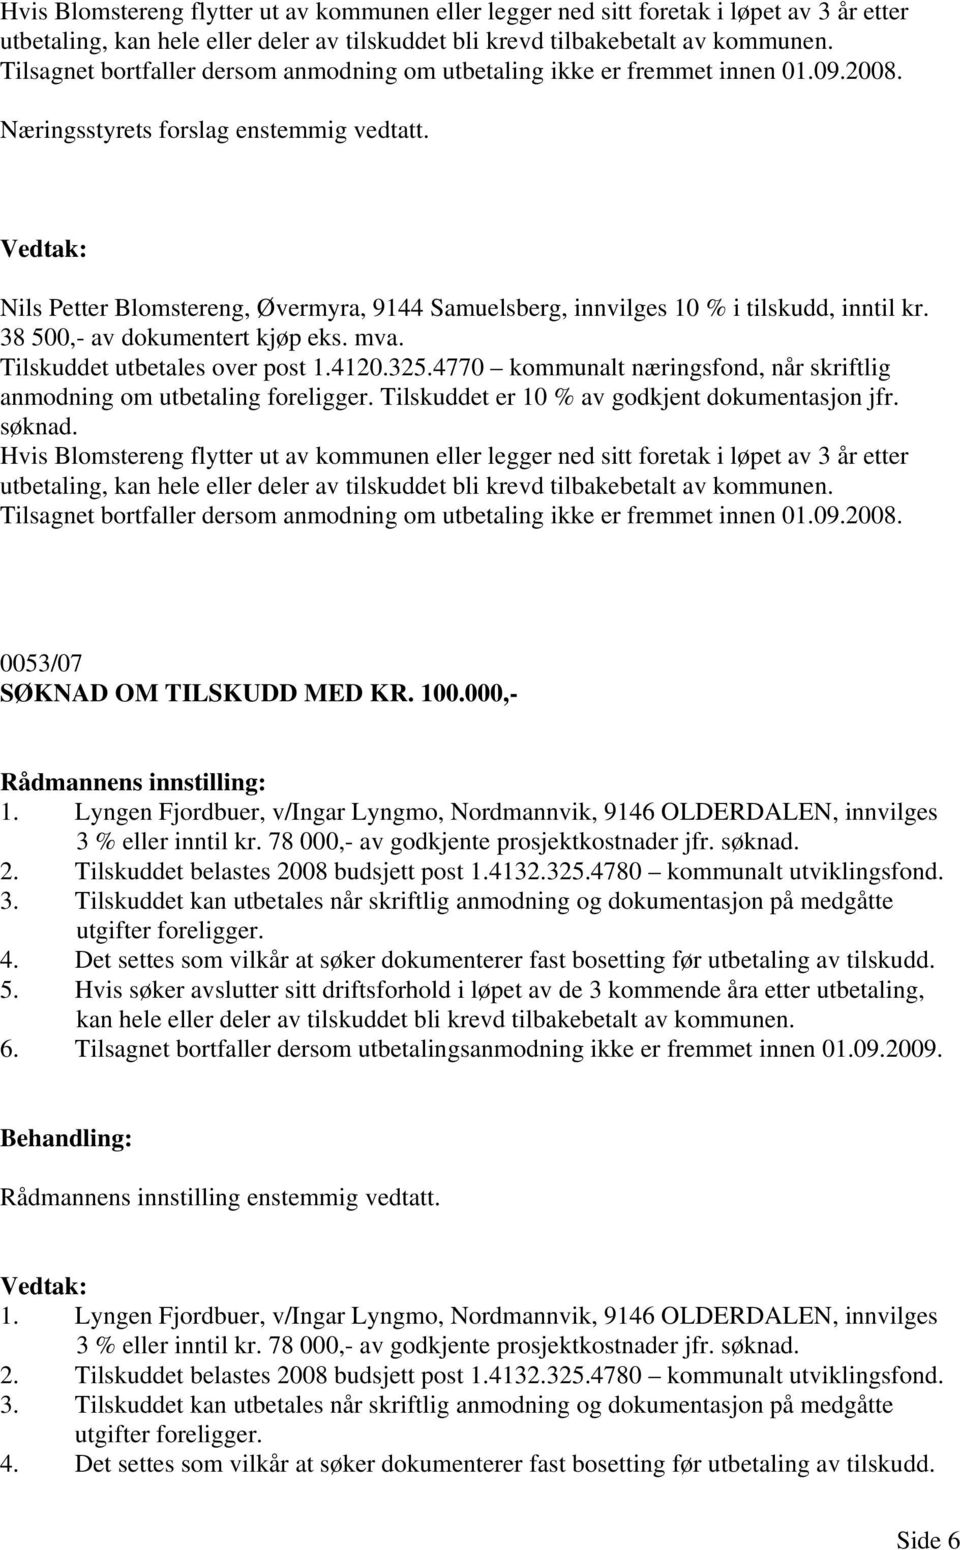 Nils Petter Blomstereng, Øvermyra, 9144 Samuelsberg, innvilges 10 % i tilskudd, inntil kr. 38 500,- av dokumentert kjøp eks. mva. Tilskuddet utbetales over post 1.4120.325.